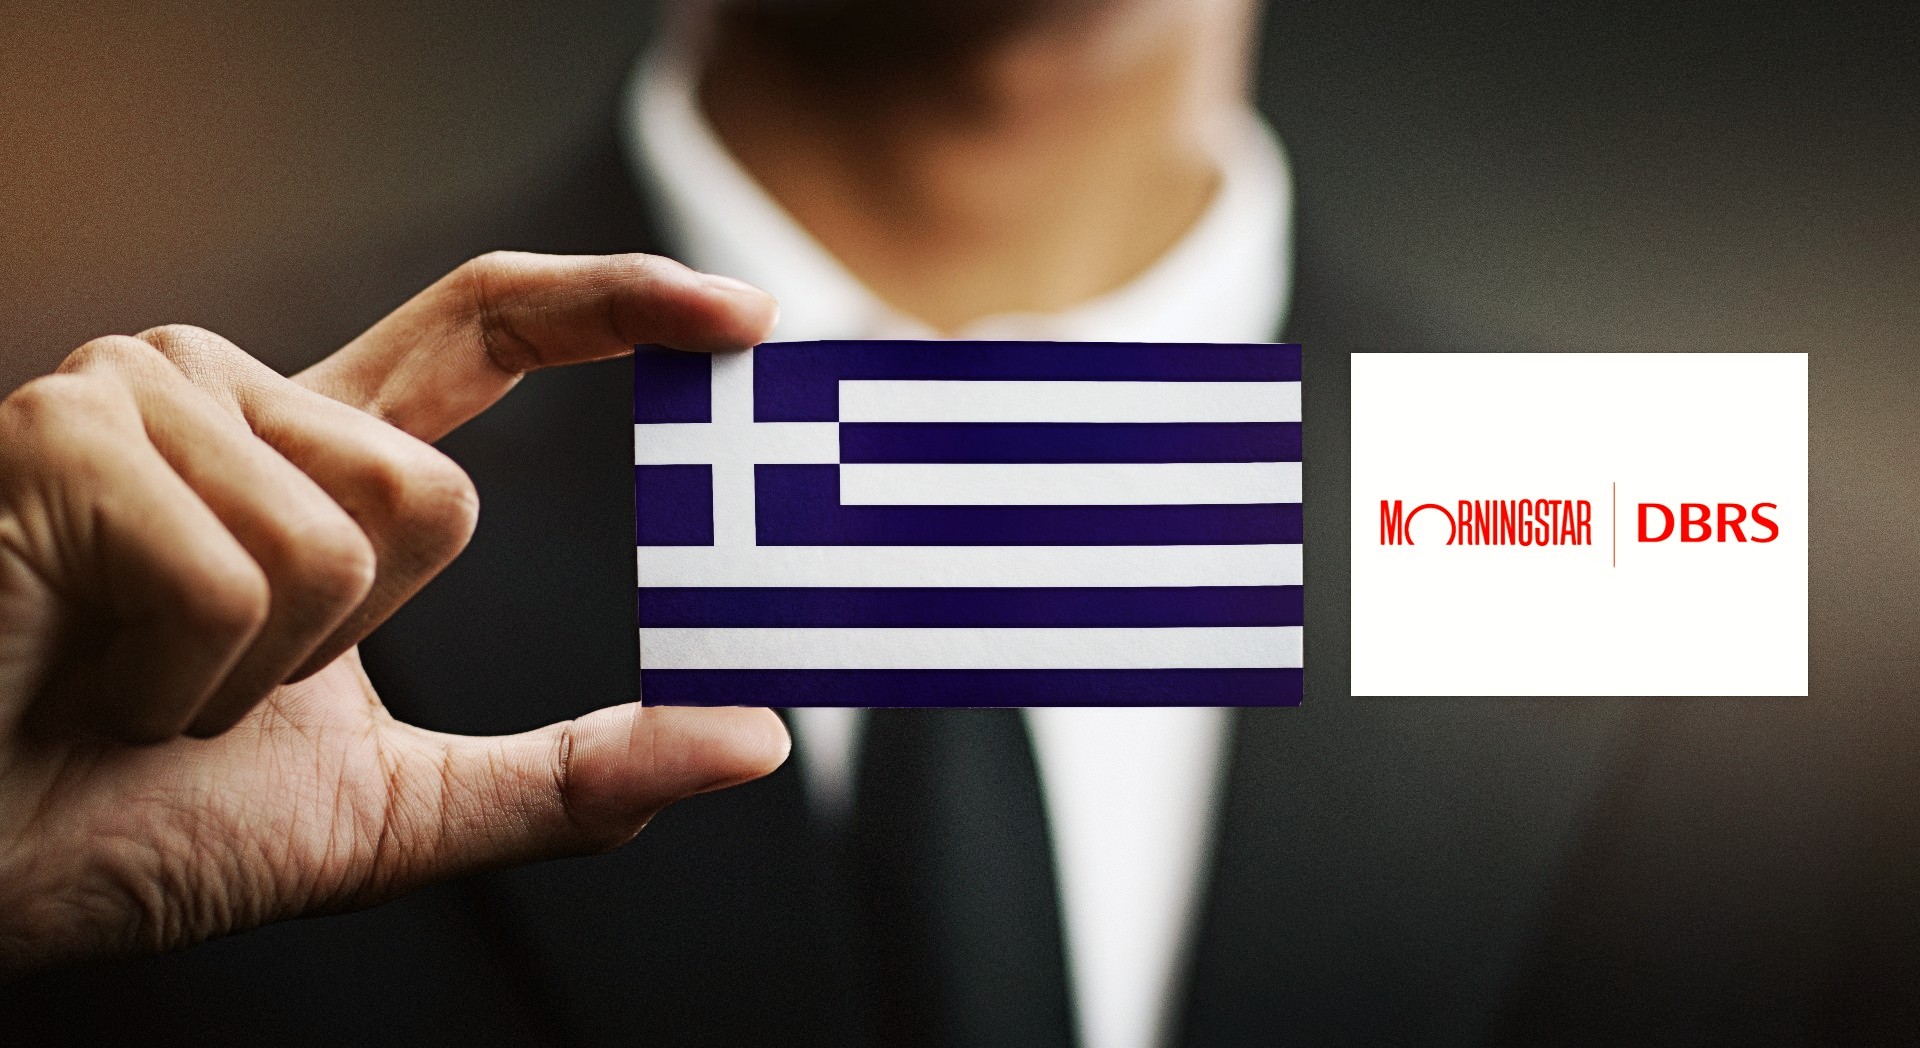 DBRS Morningstar: Αναβάθμιση και επιστροφή στην επενδυτική βαθμίδα για την Ελλάδα - Ο καναδικός οίκος επανέφερε τα κρατικά ομόλογα σε καθεστώς επενδυτικής βαθμίδας για πρώτη φορά από το 2010!